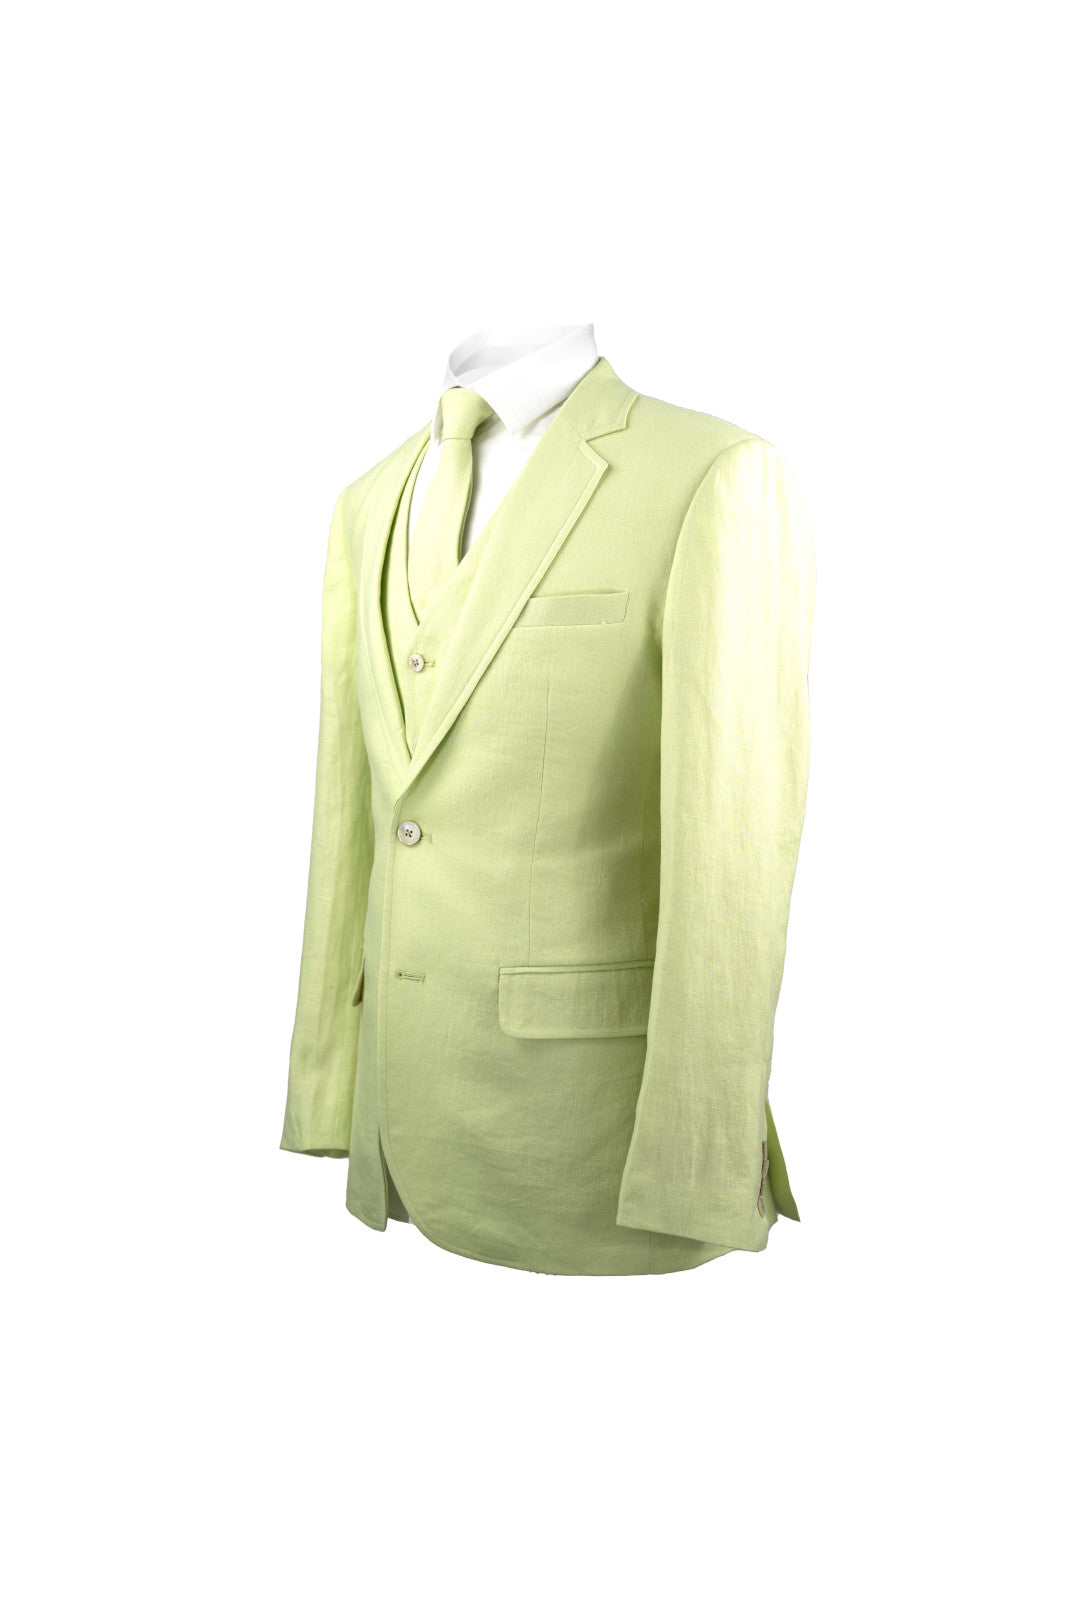 Lime Green Linen 3 Piece Suit